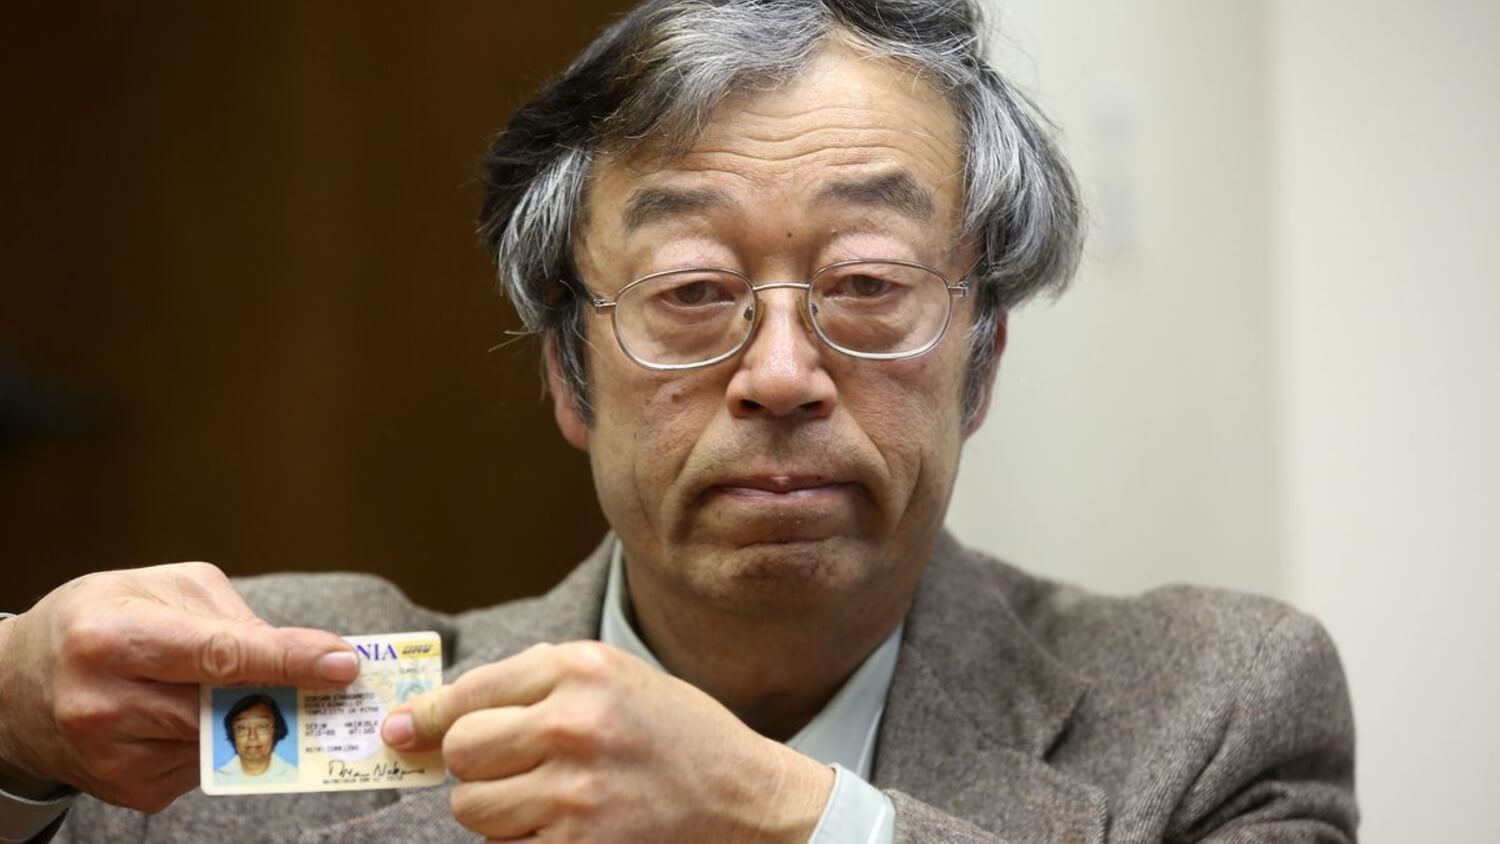 Откуда родом Сатоши Накамото? Сатоши Накамото изображают так. Хотя на фотографии — Дориан Накамото, который не относится к криптовалюте. Фото.